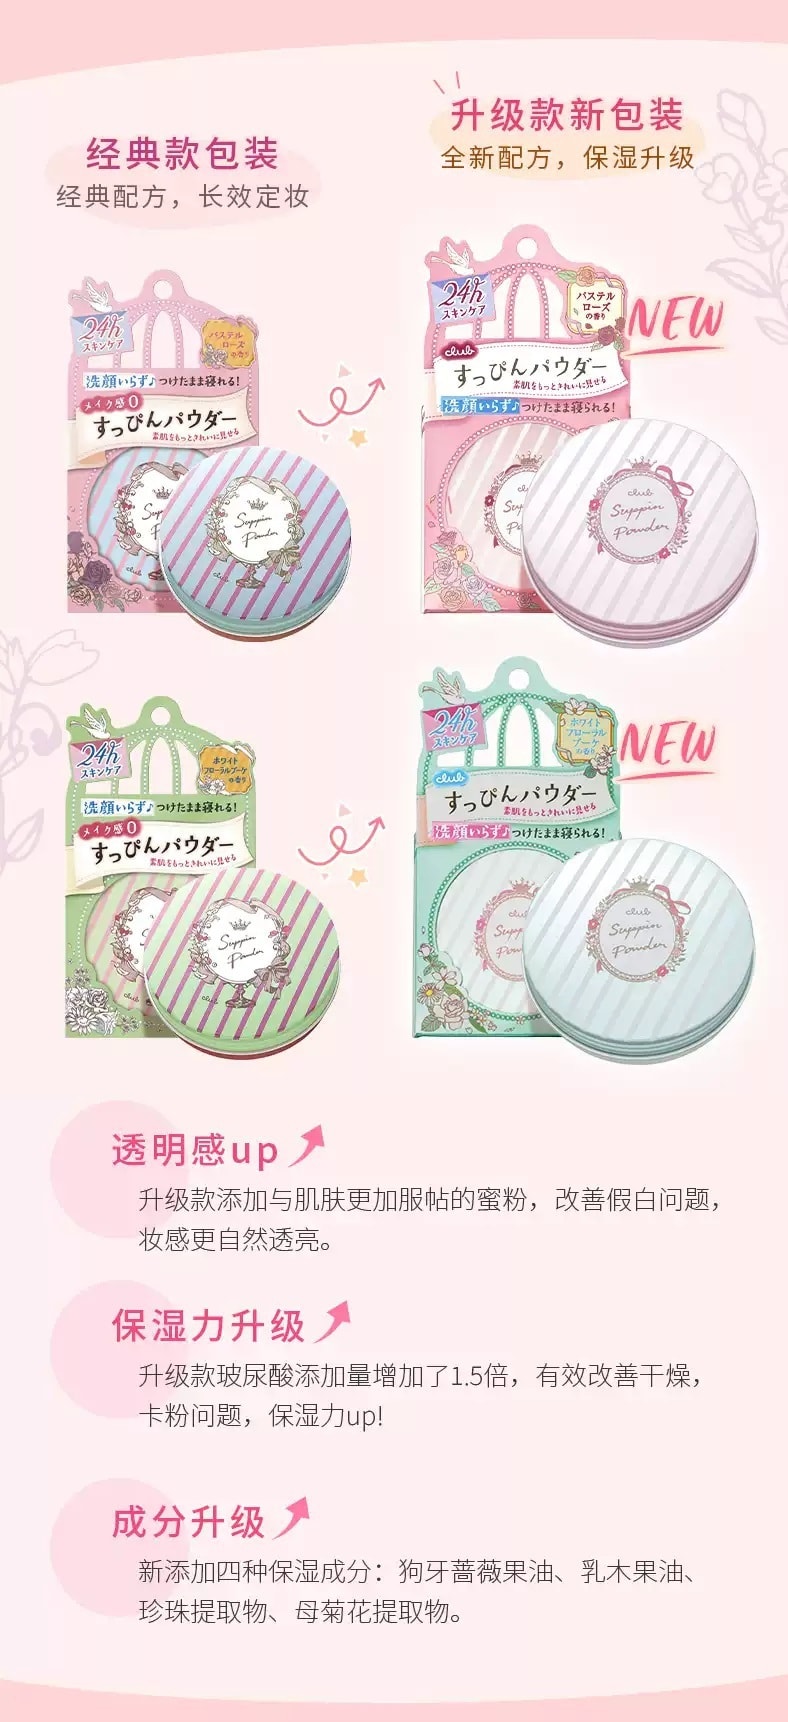 日本 CLUB 出浴素顏美肌粉餅無香精保濕護膚粉餅 26g